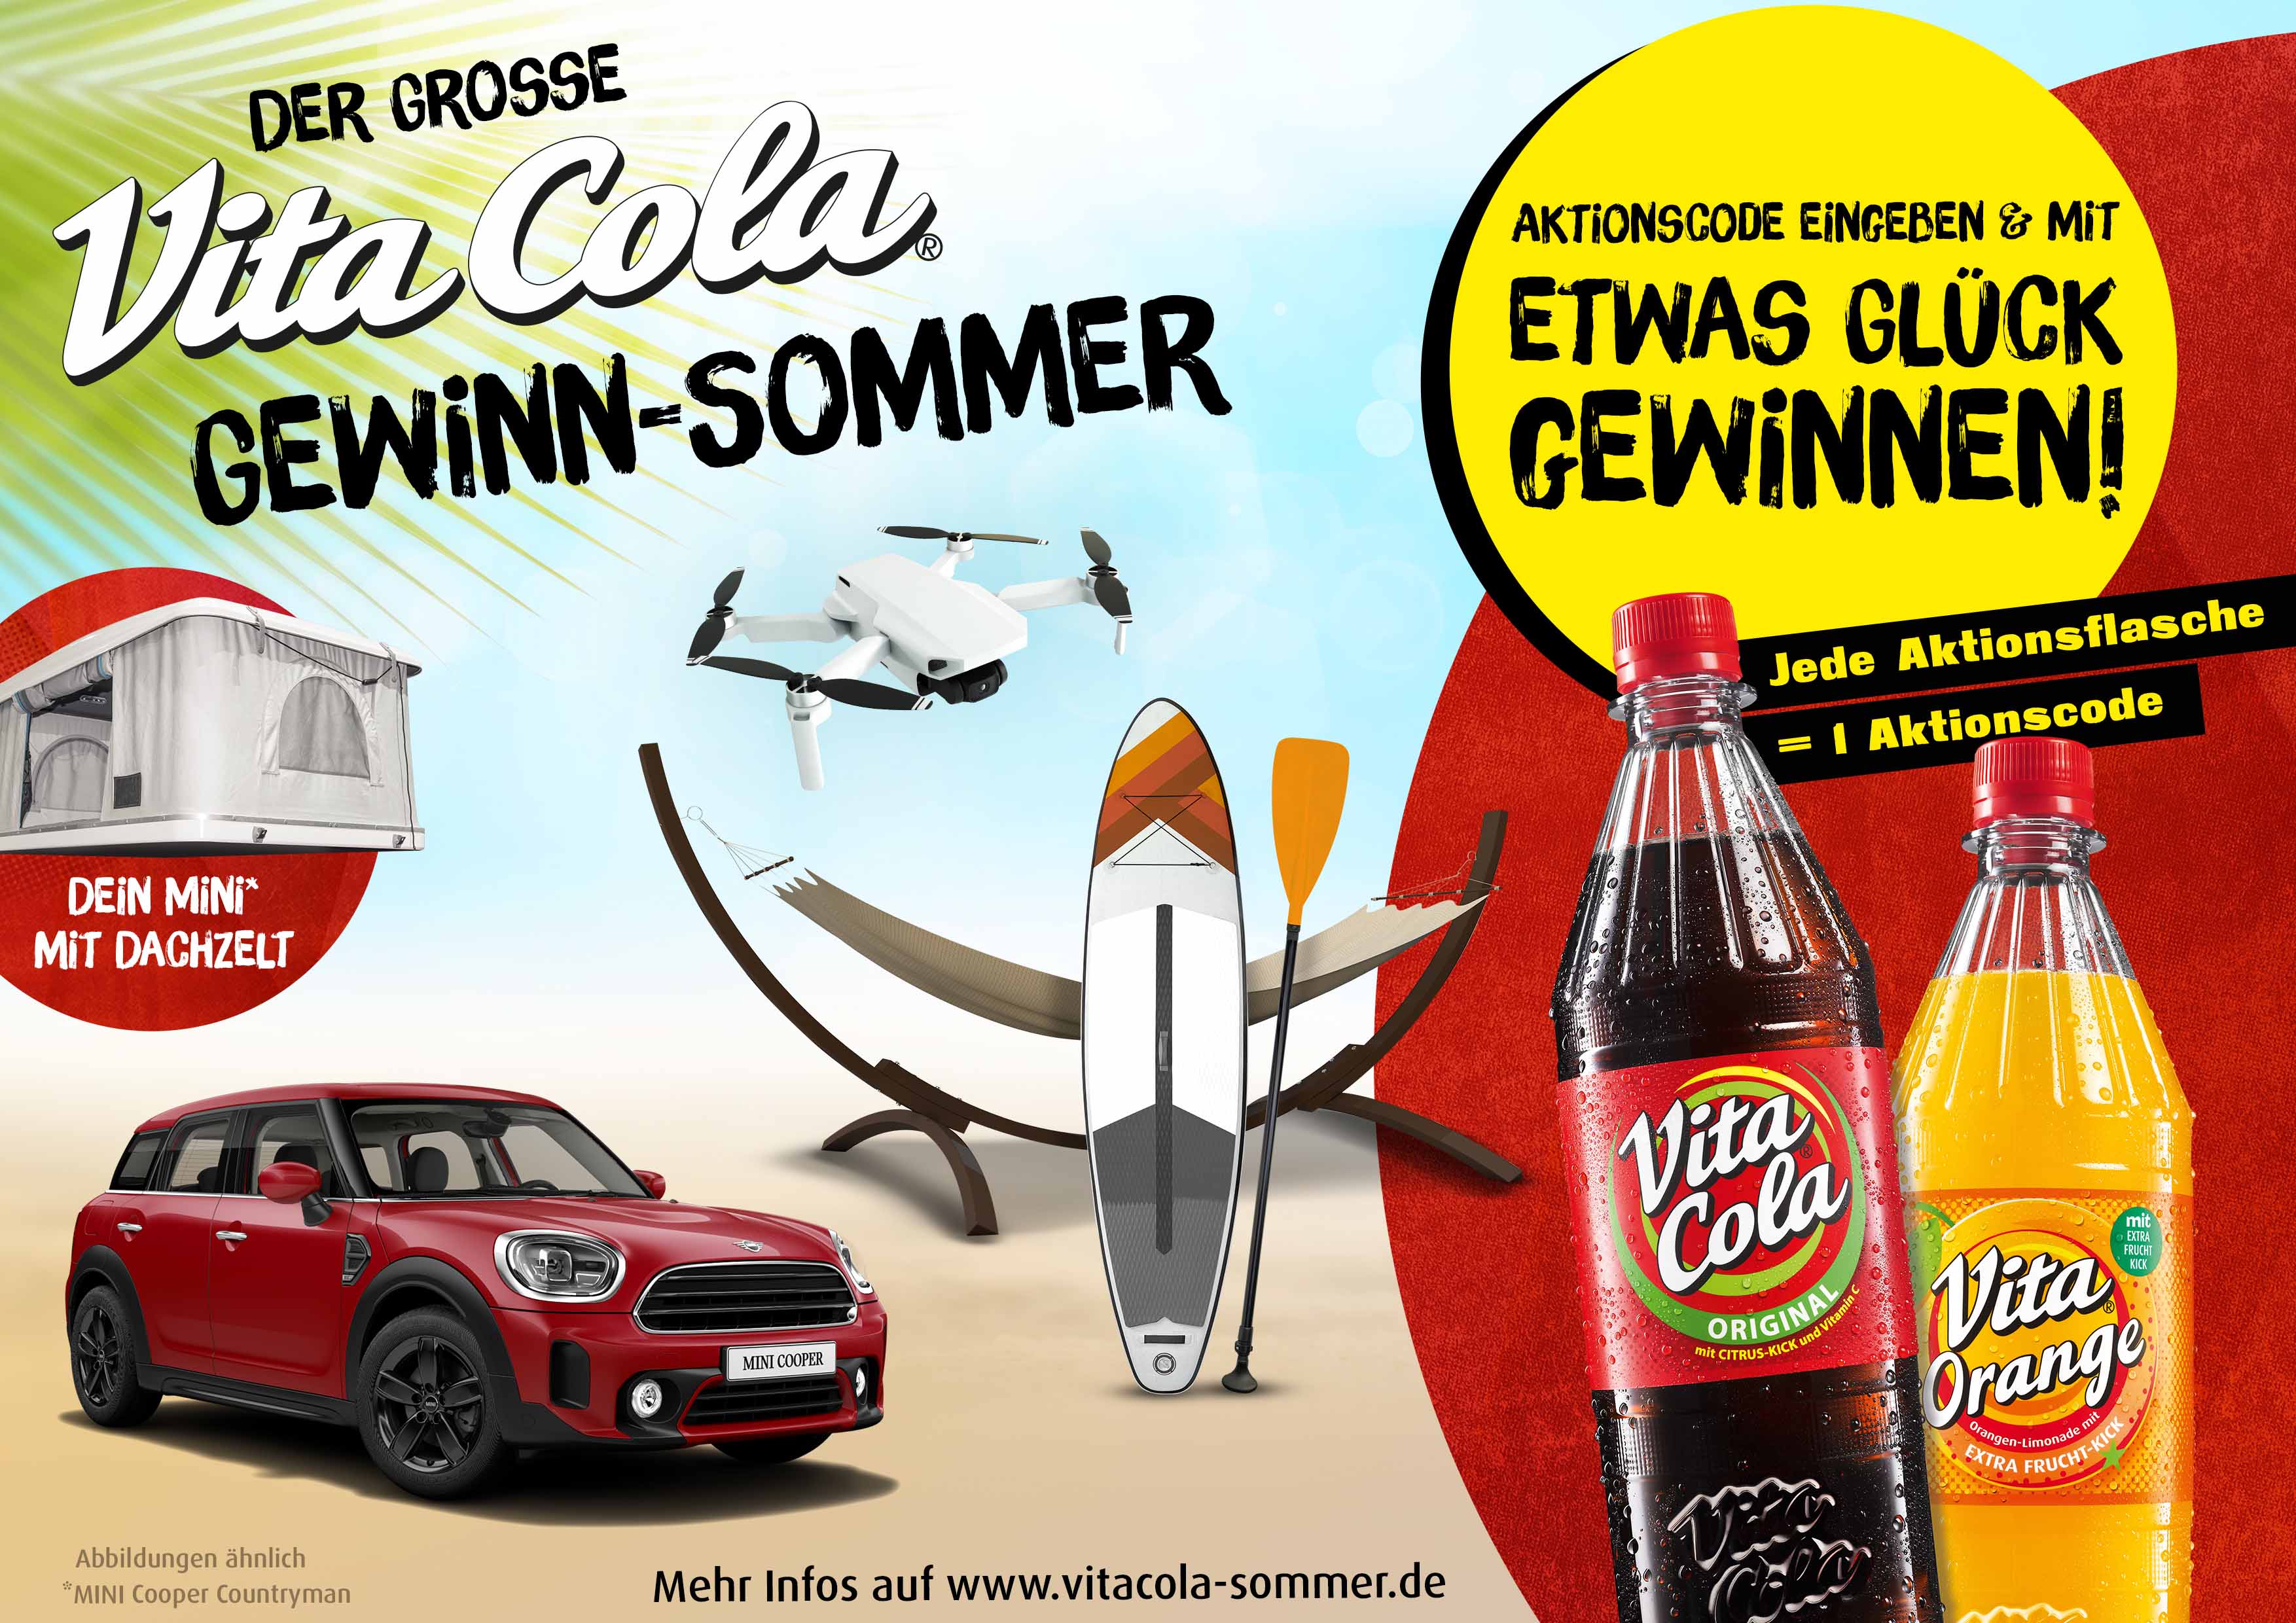 Vita Cola verlost Mini Cooper mit Dachzelt | Freie-Pressemitteilungen.de